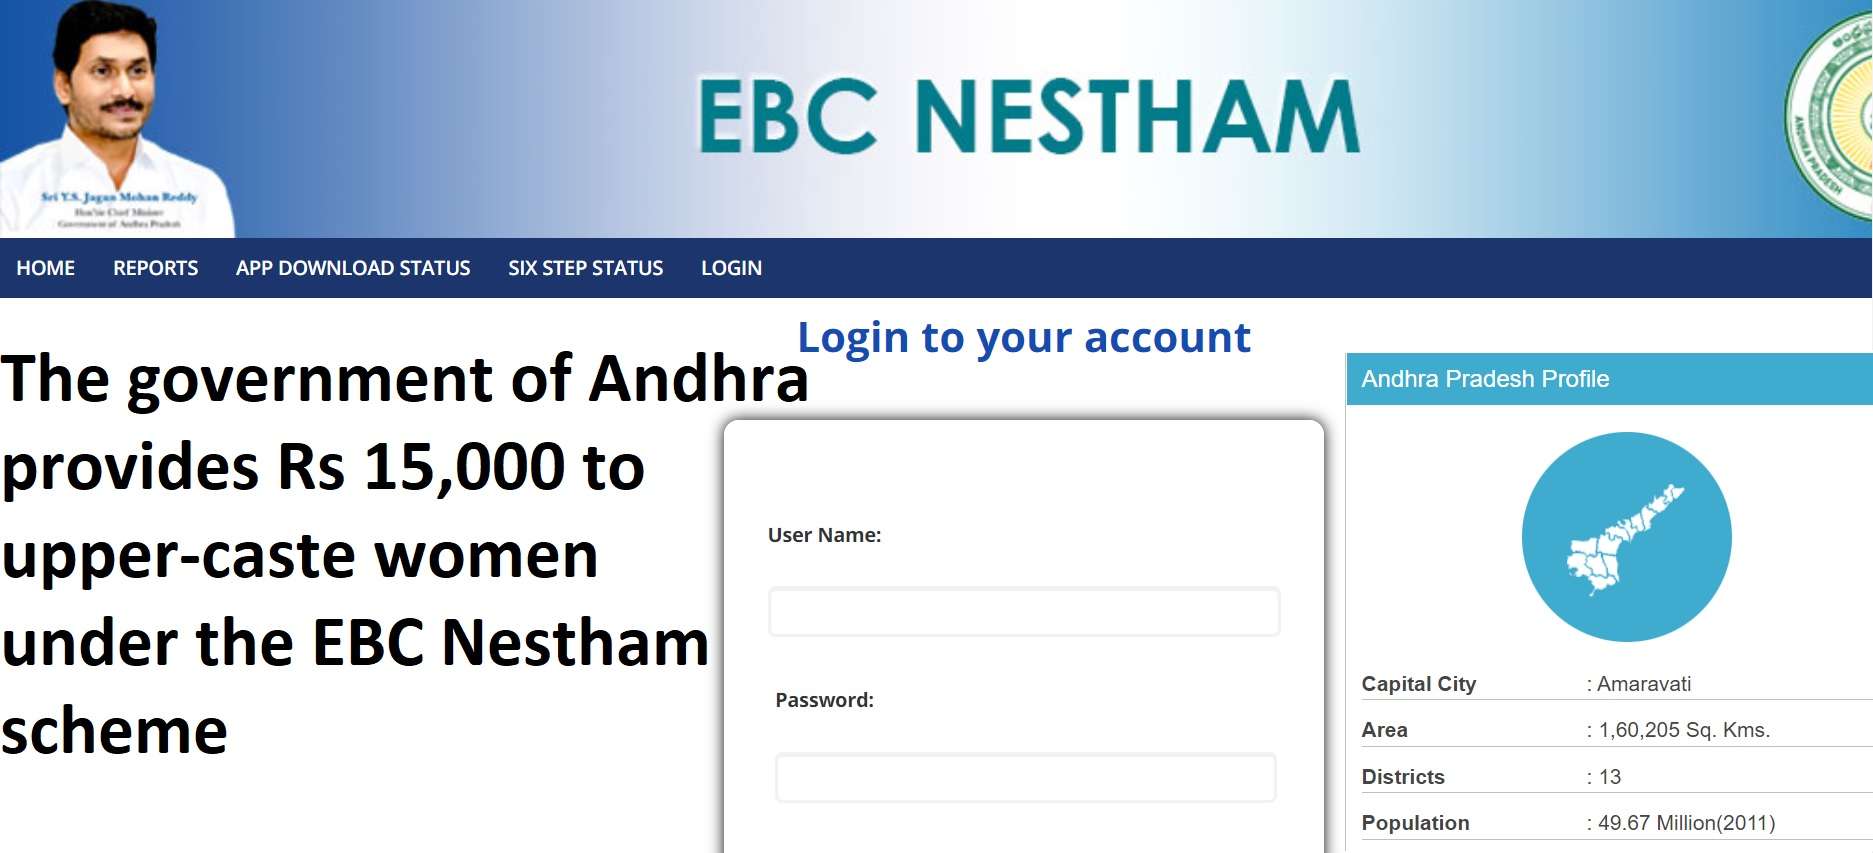 EBC Nestham Scheme Andhra Pradesh